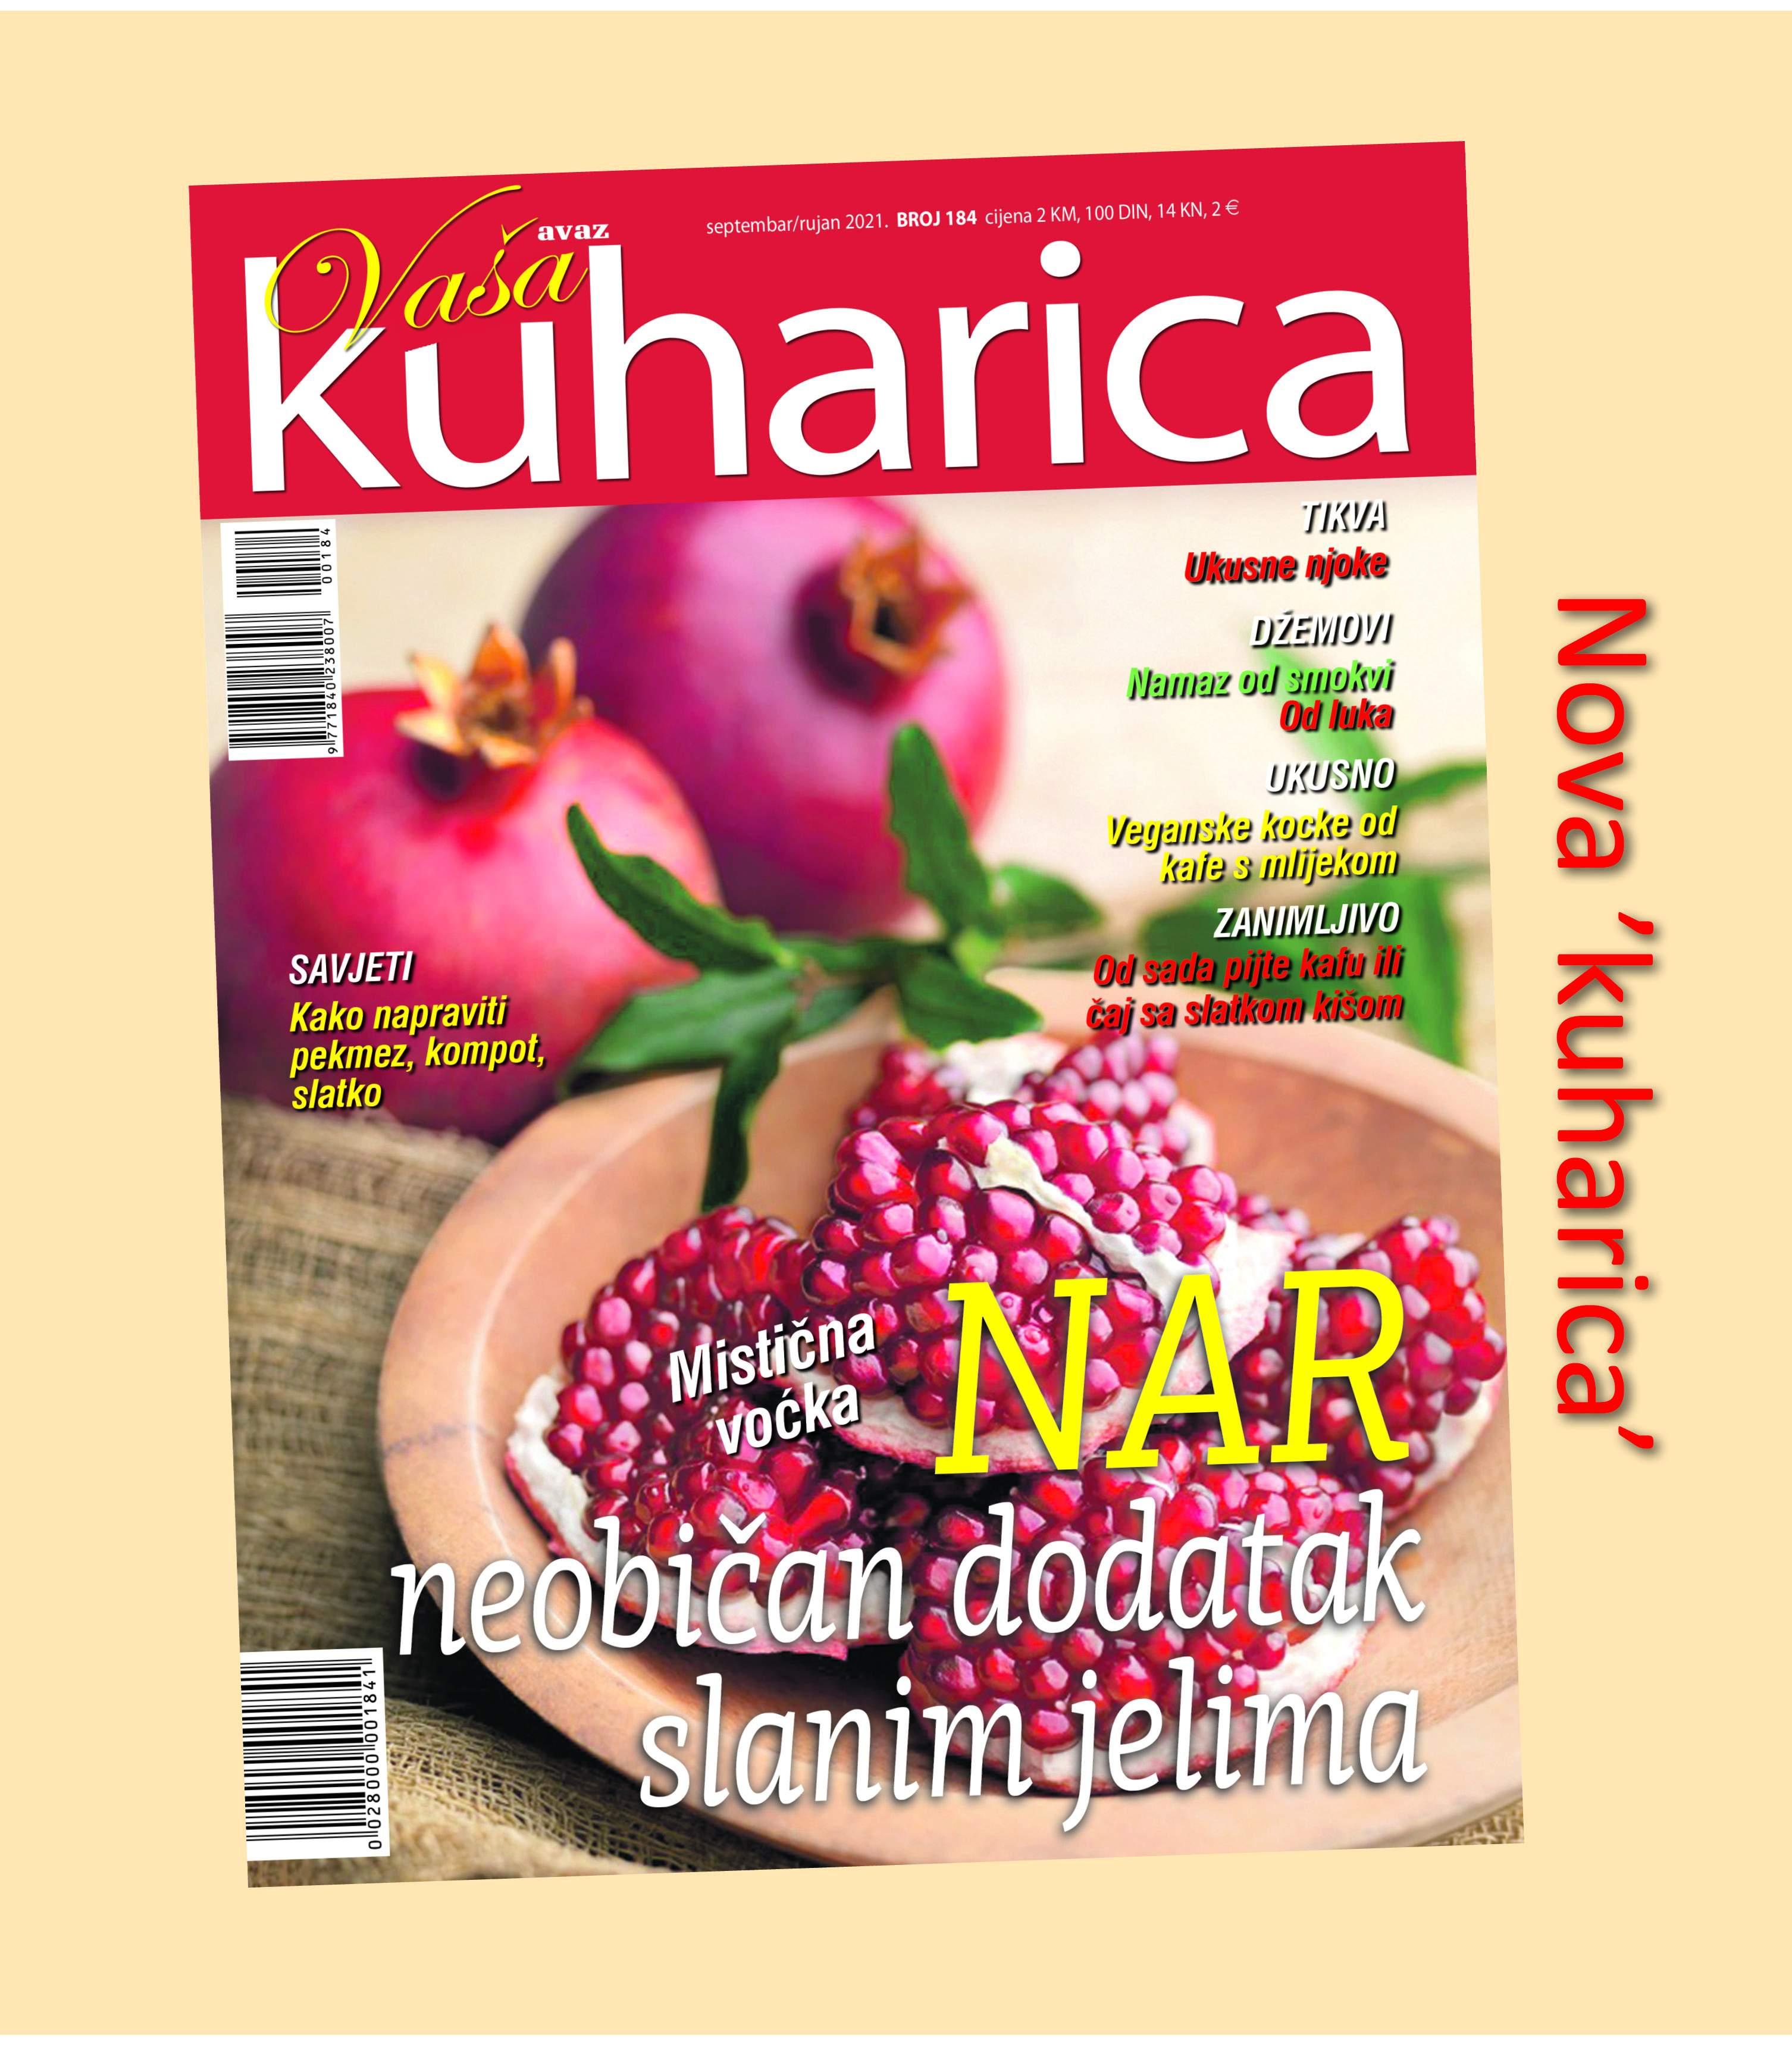 Novi broj časopisa "Kuharica" - Avaz